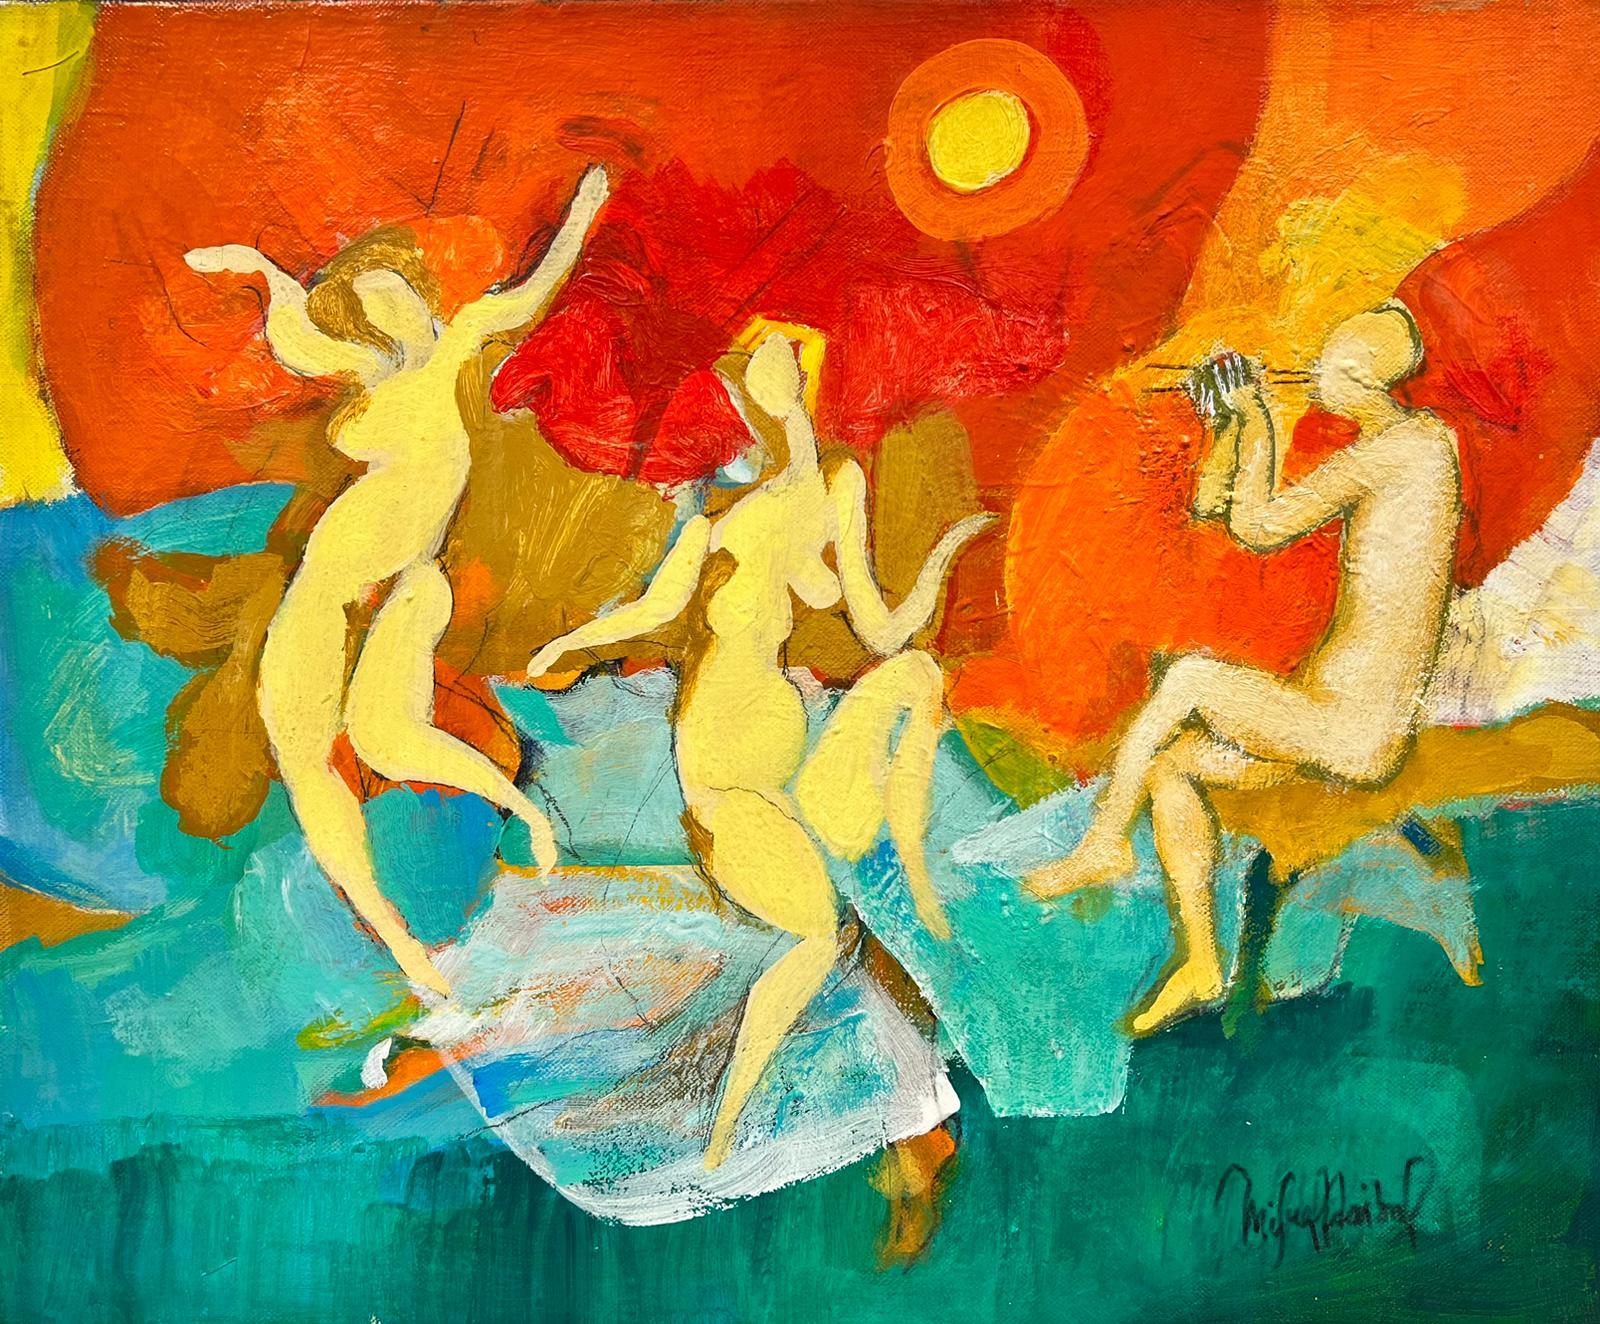 Modernist Dancing Nudes at Orange Sunset von Franzsisch / chilenischen Knstler signiert l 